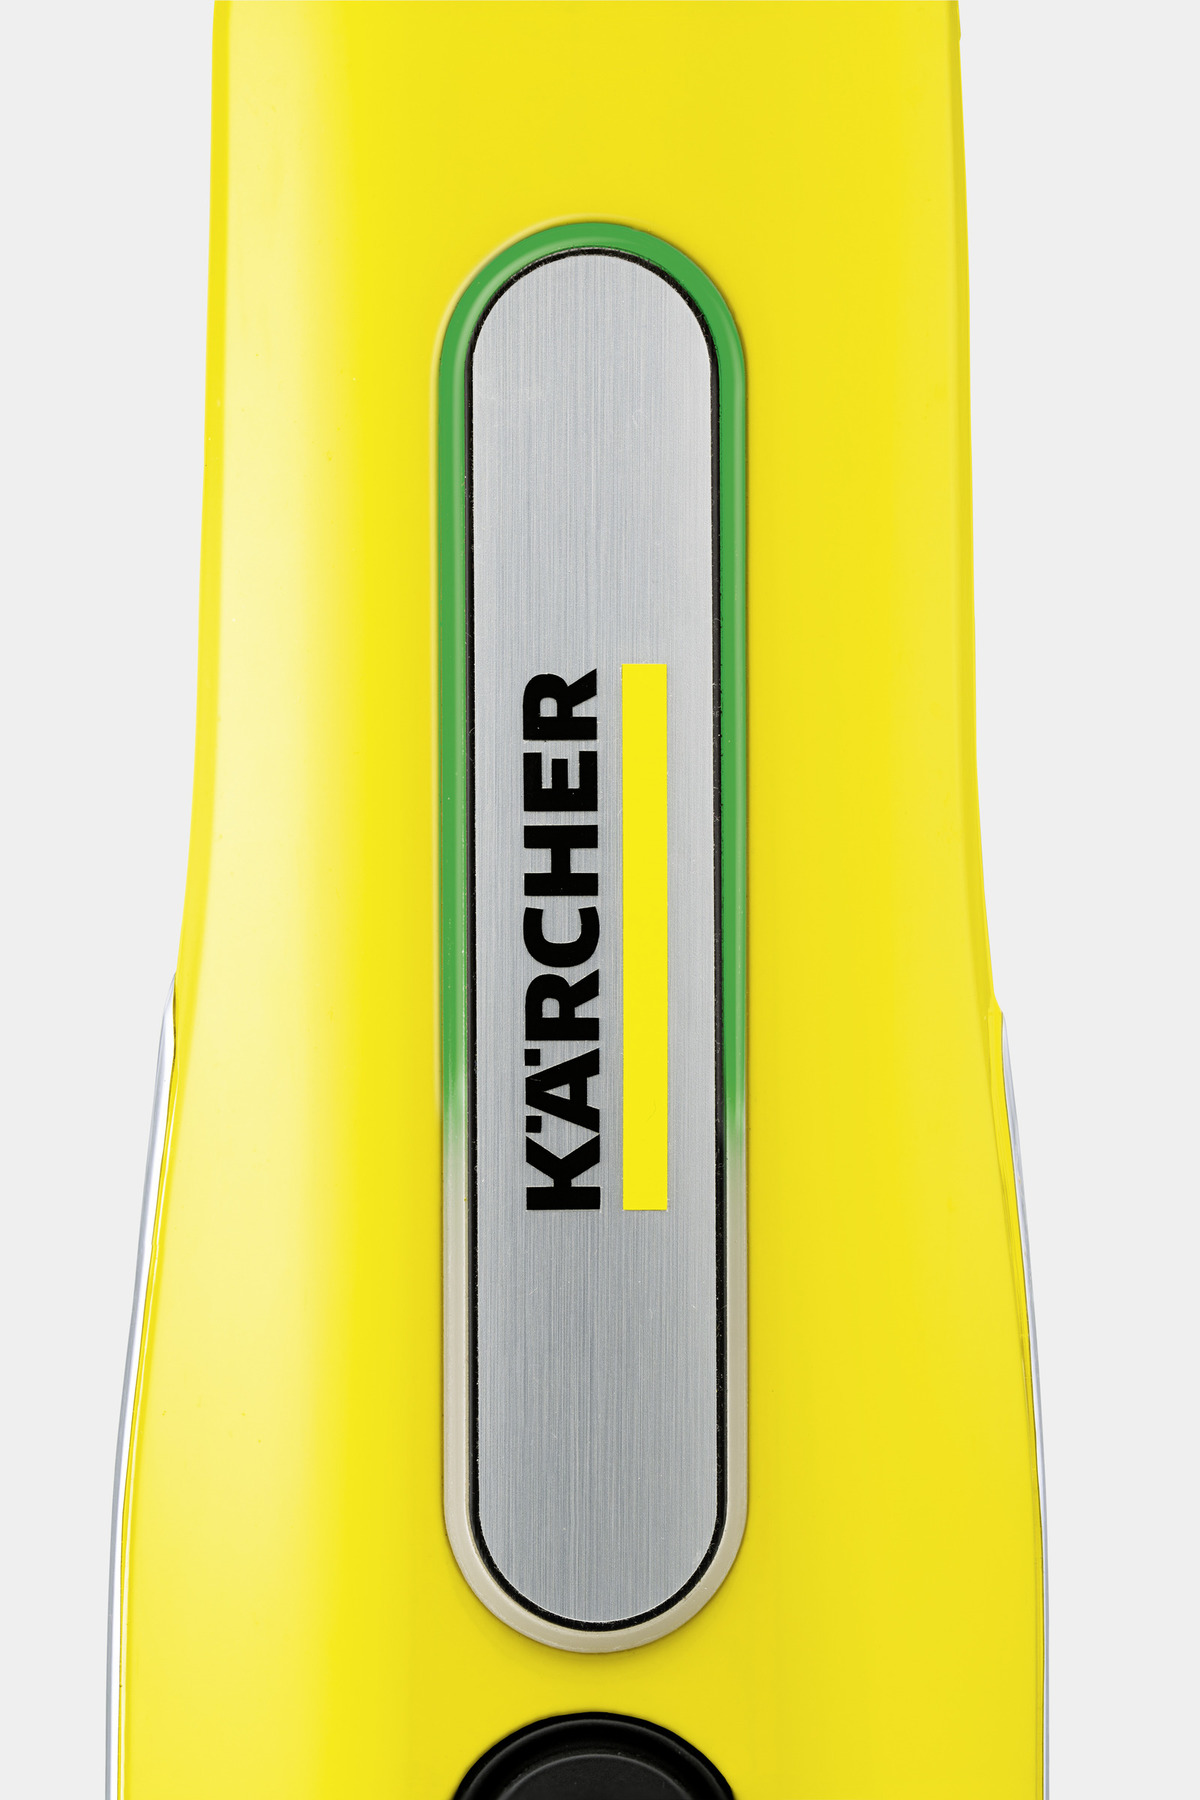 Limpiadora a Vapor SC 3 Upright Easyfix Karcher - Aritrans Venta Online -  Herramientas para su próximo proyecto